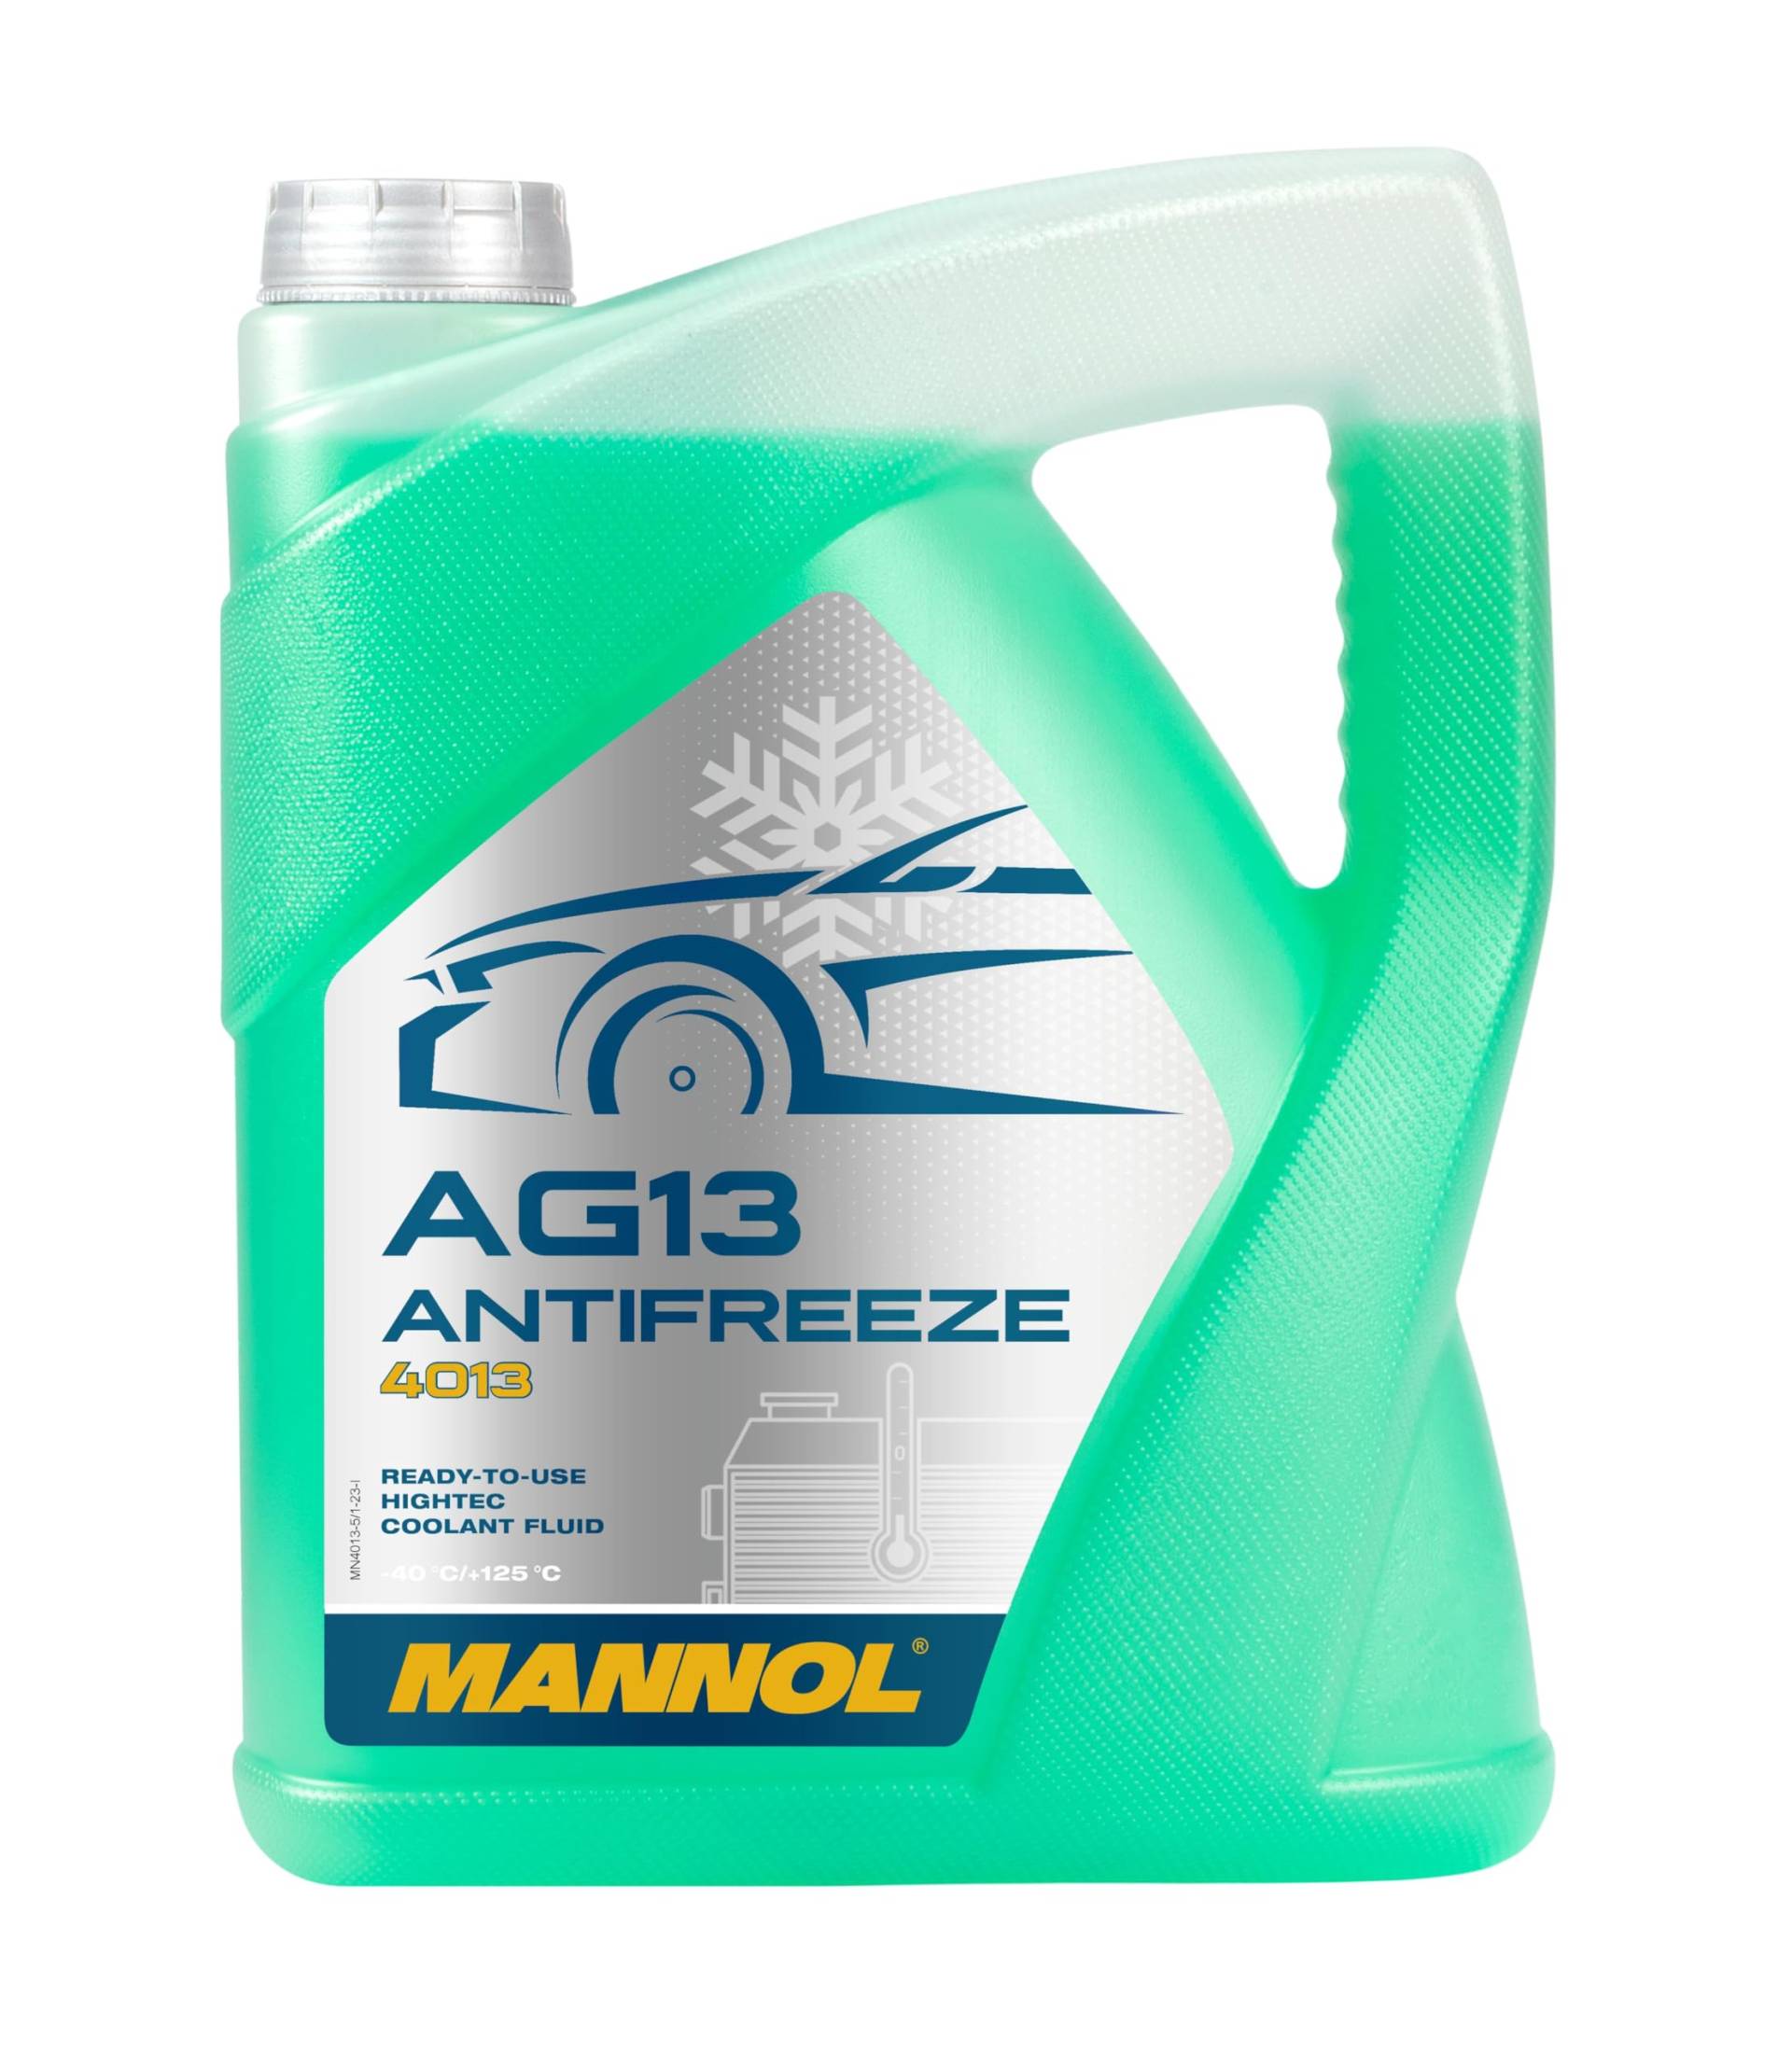 MANNOL Frostschutz grün SAE J1034 Hightec Antifreeze AG13-40°C 5 Liter von MANNOL